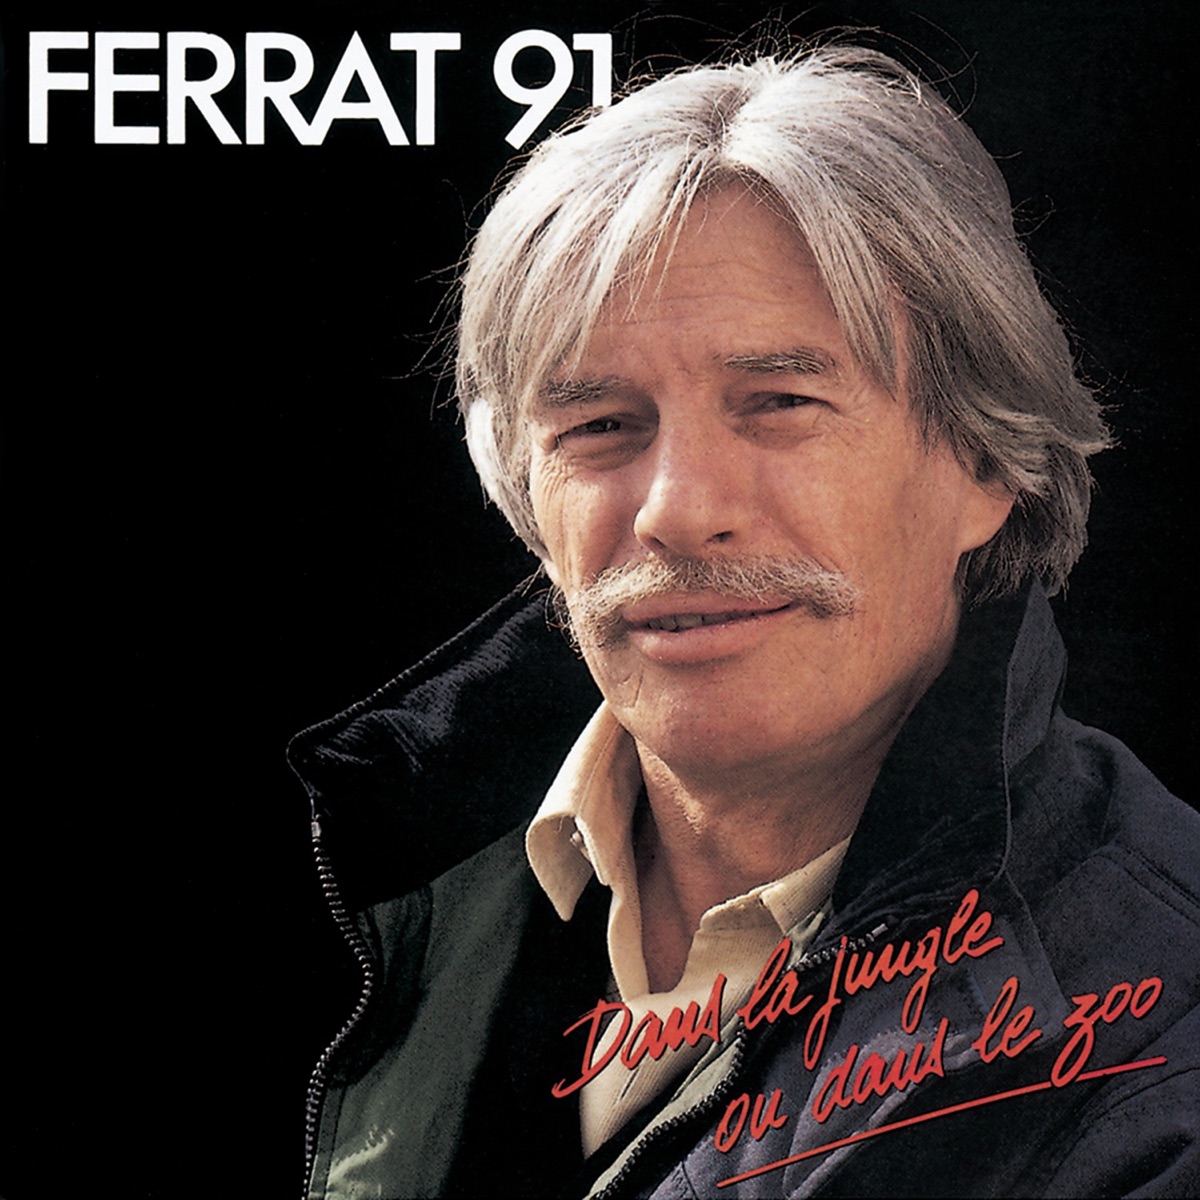 Les 50 plus belles chansons de Jean Ferrat par Jean Ferrat sur Apple Music